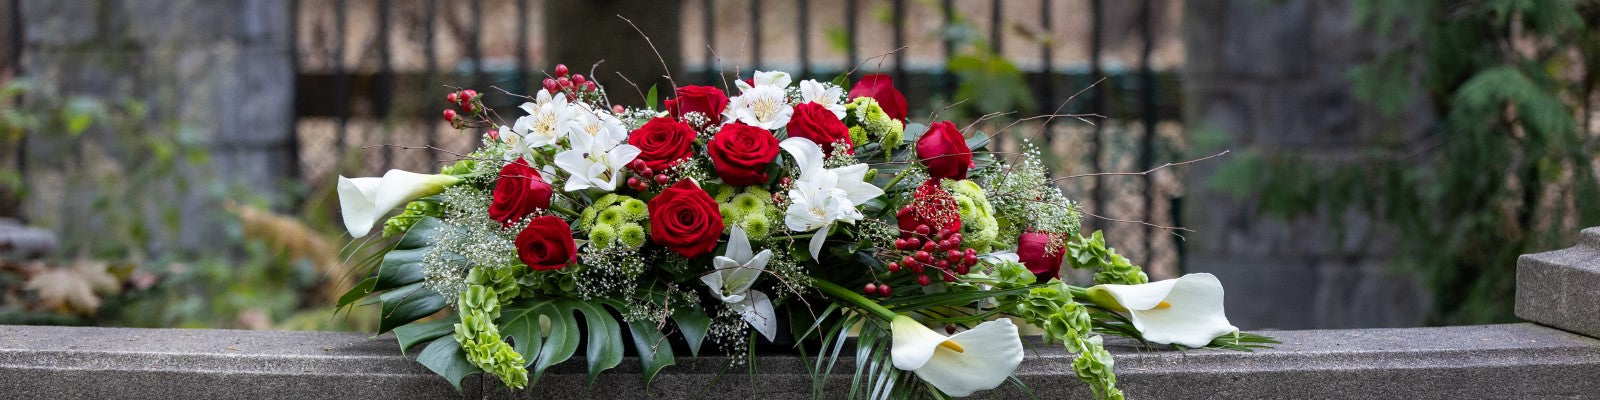 Fleurs pour funérailles